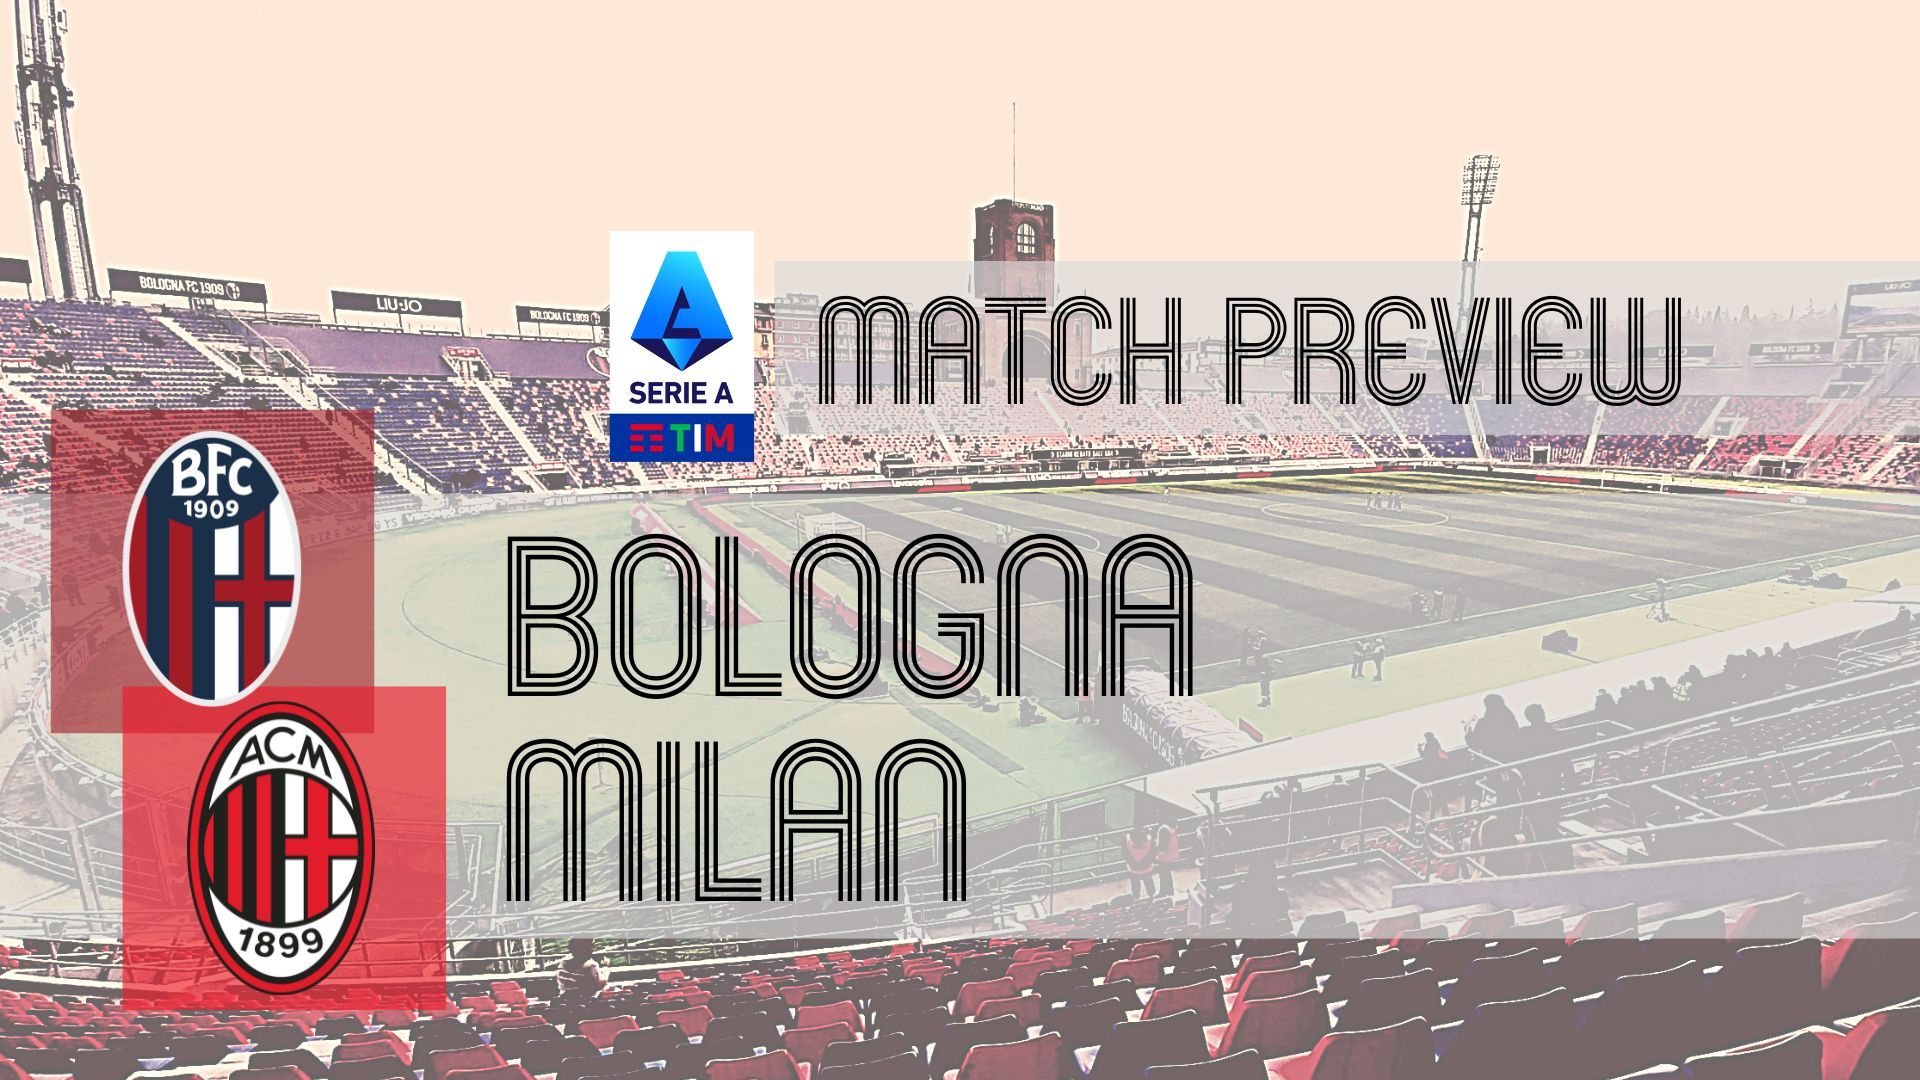 2022-23 Serie A, Bologna vs Fiorentina, Match Preview